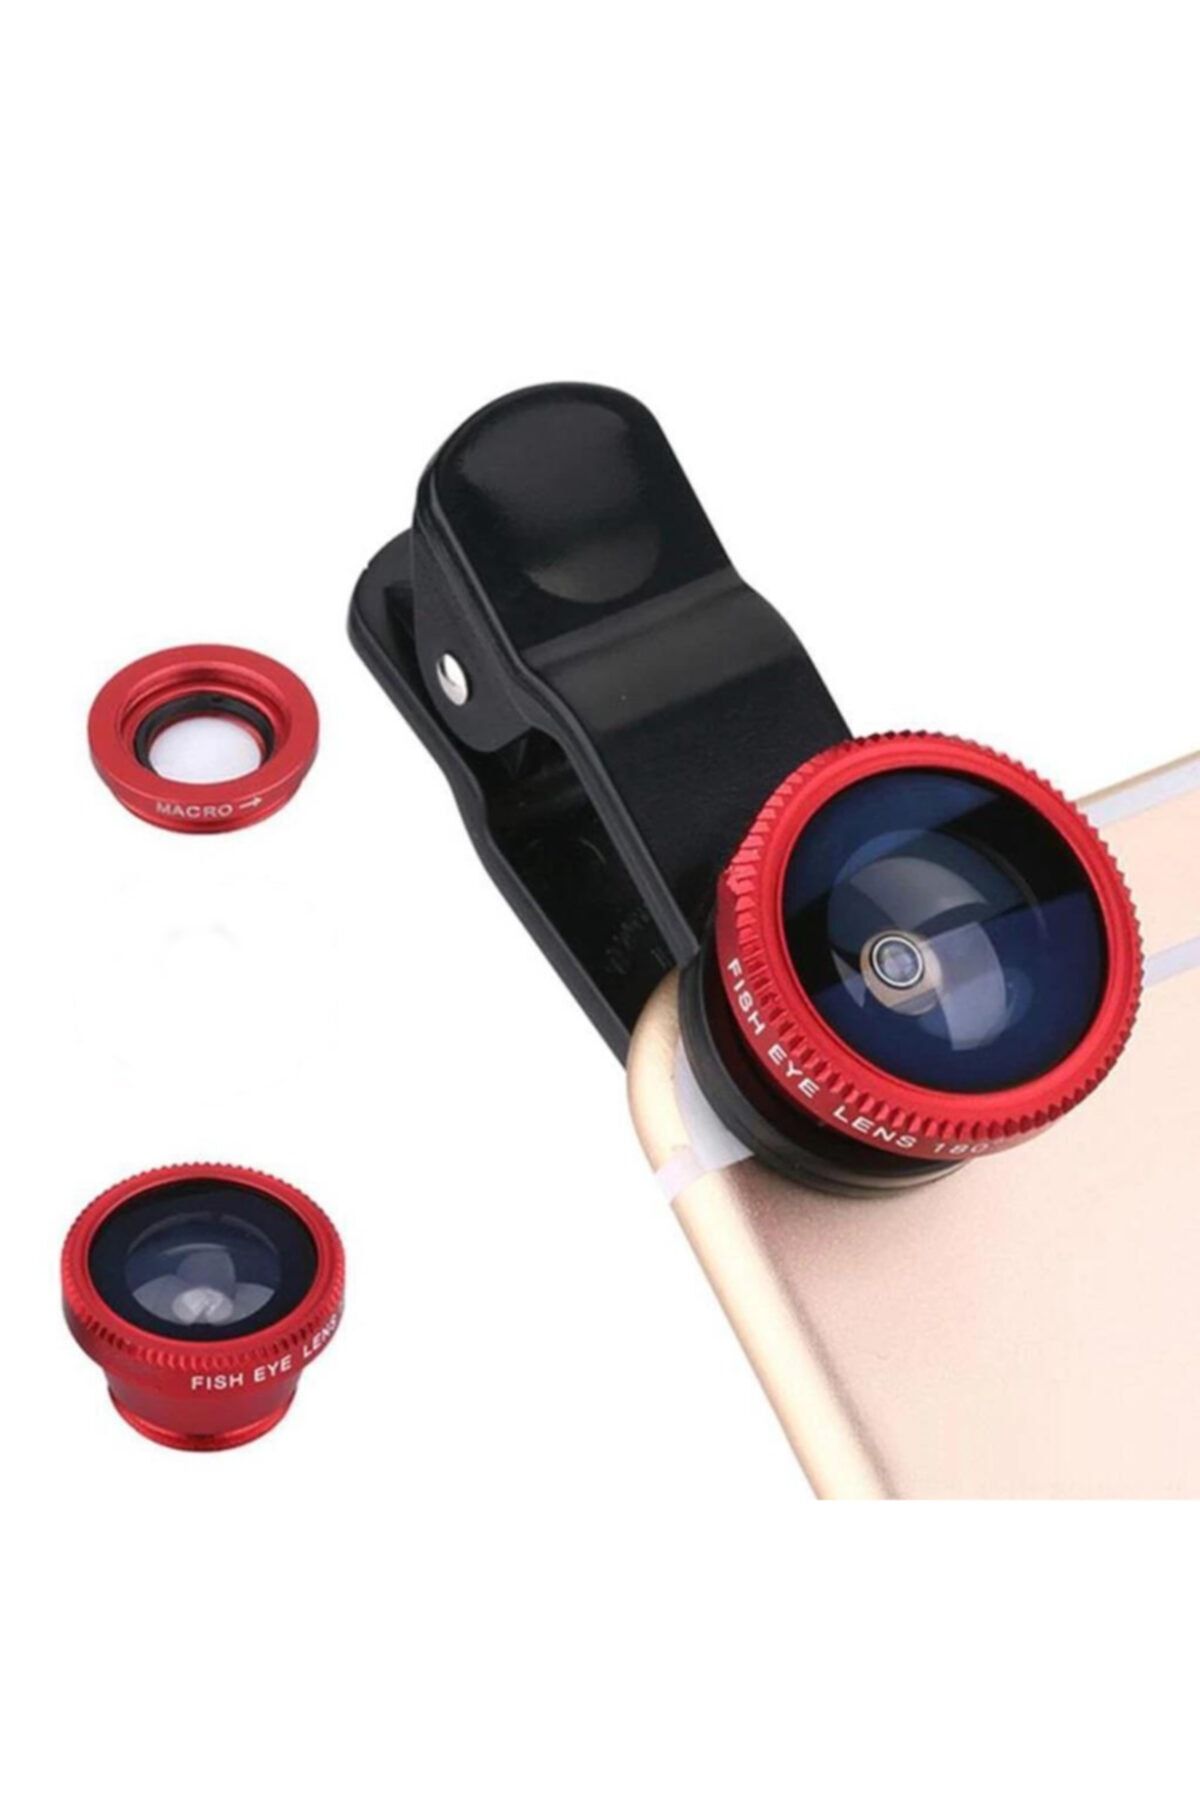 Techno phone Üniversal 3 Lü Telefon Lensi Balık Gözü&geniş Açı&makro Lens